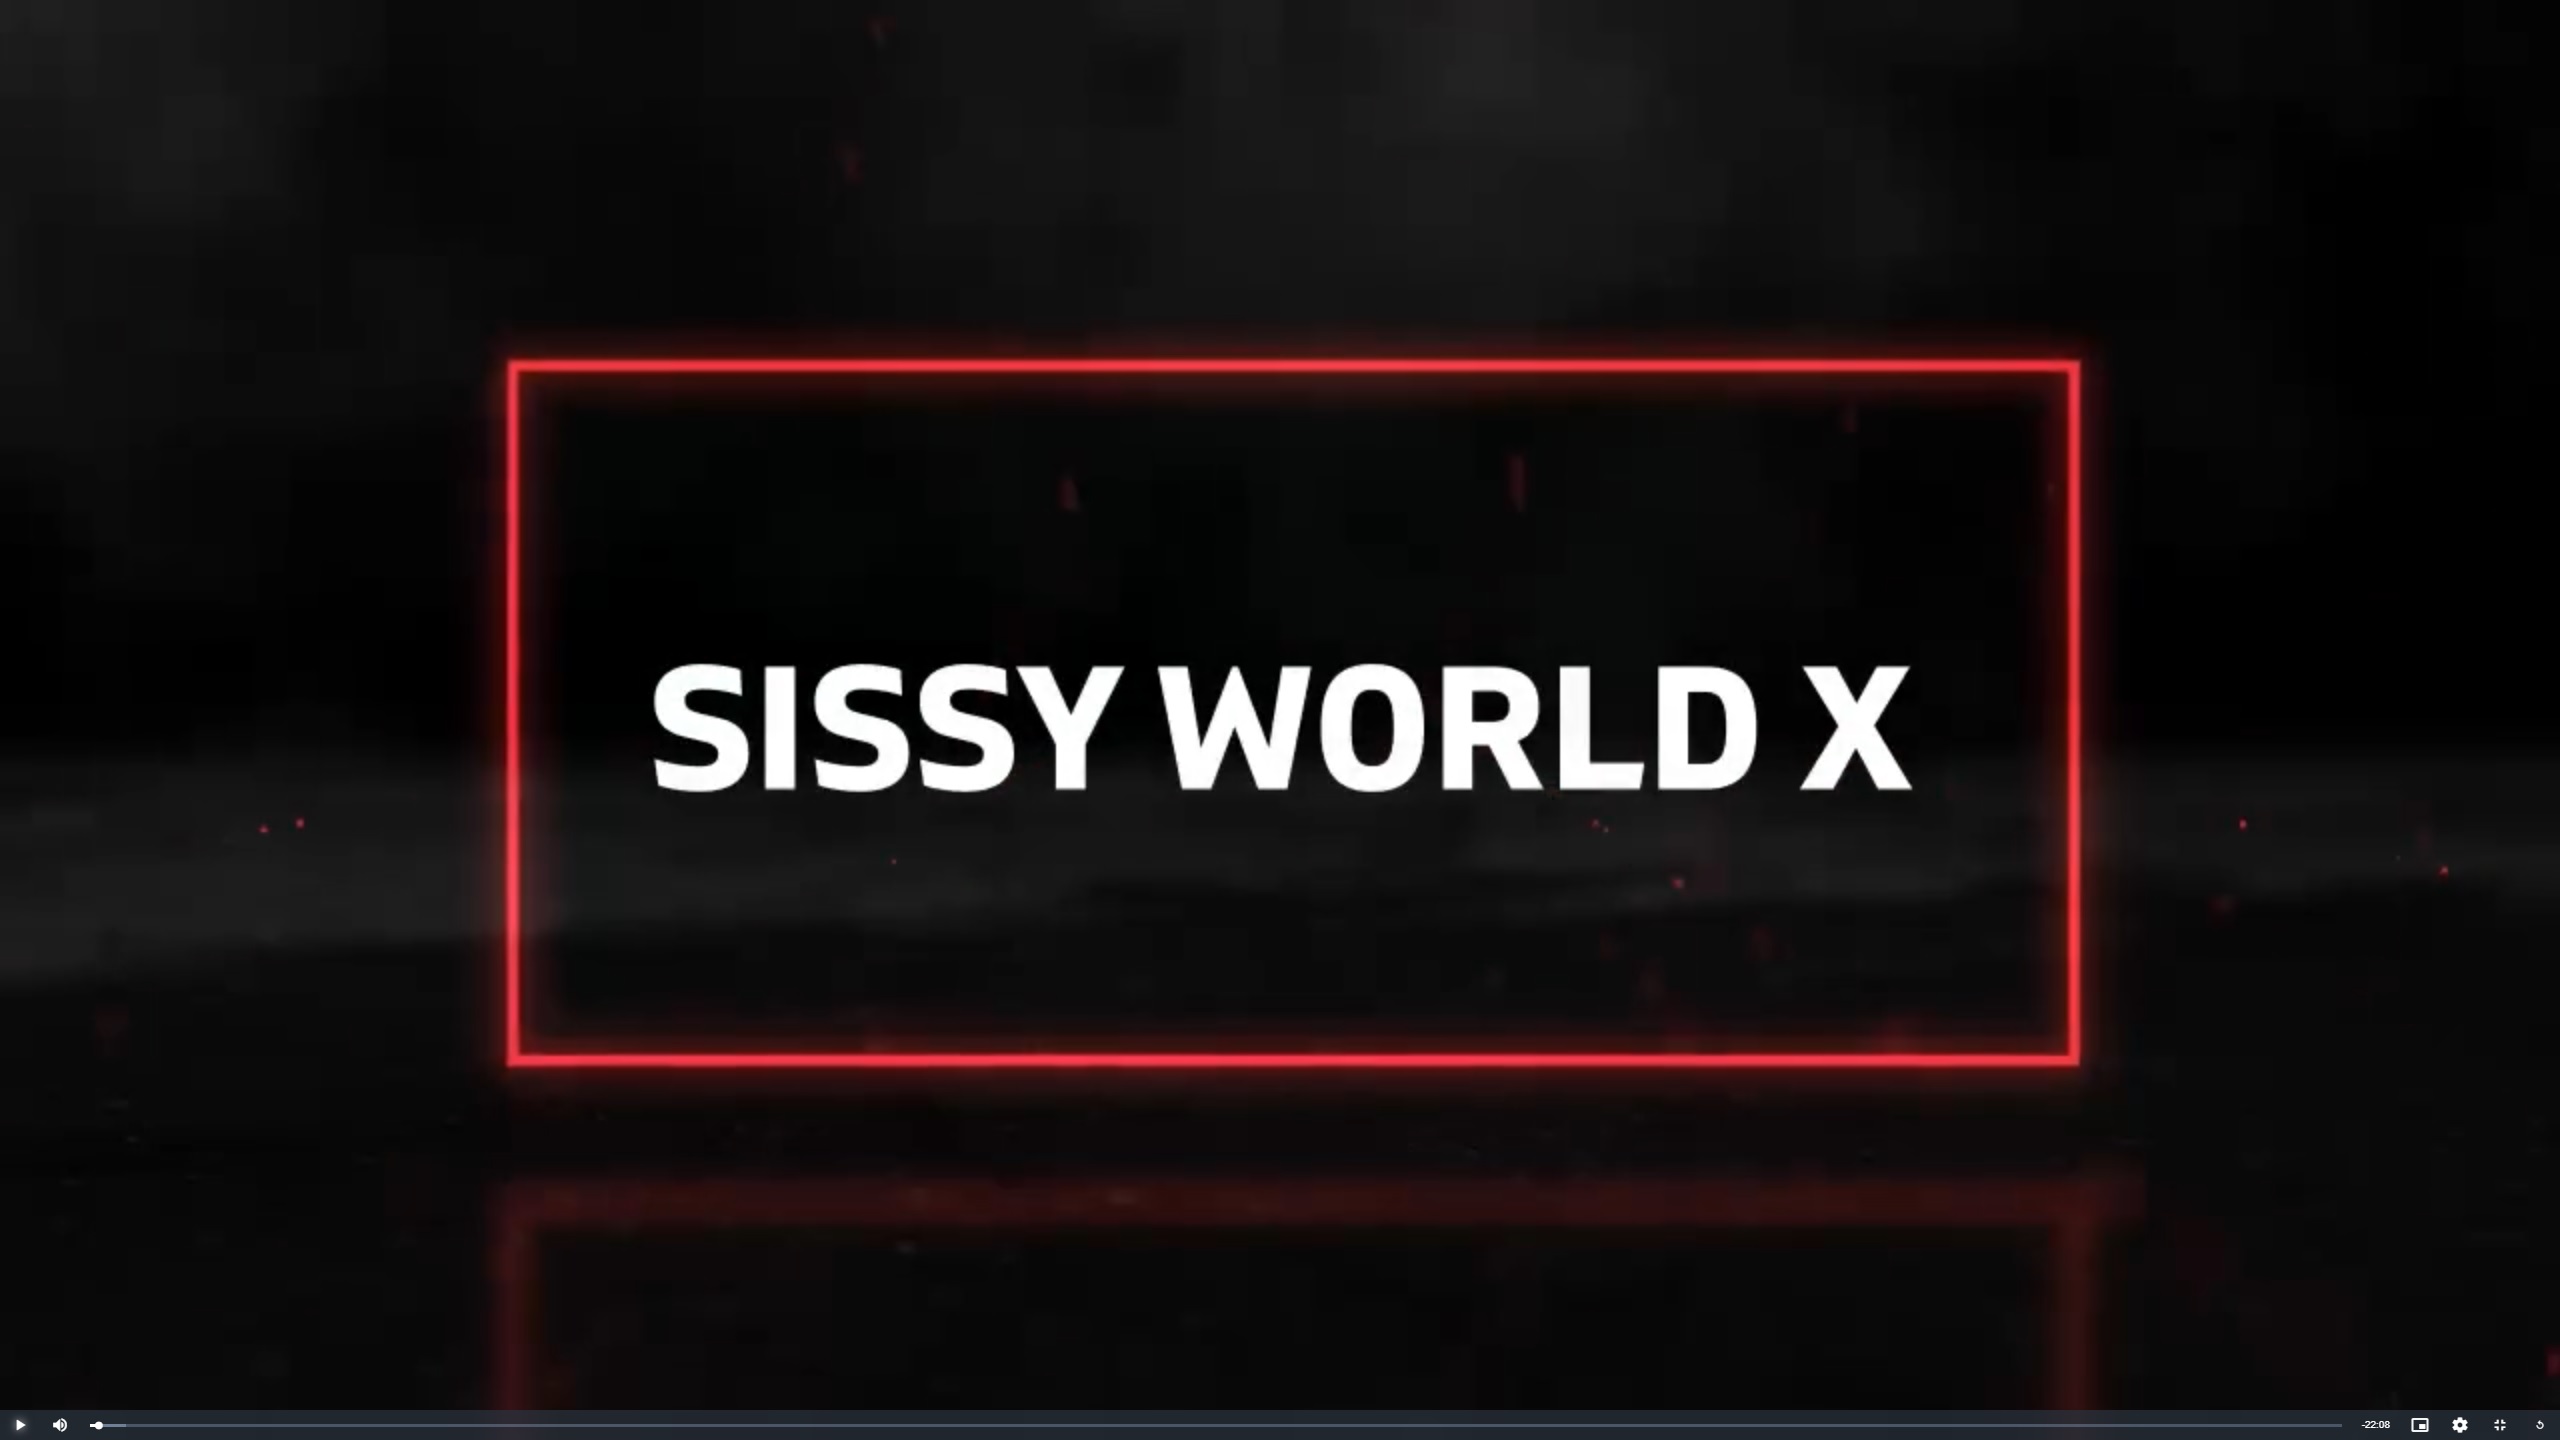 Sissy World 10 by Drogon